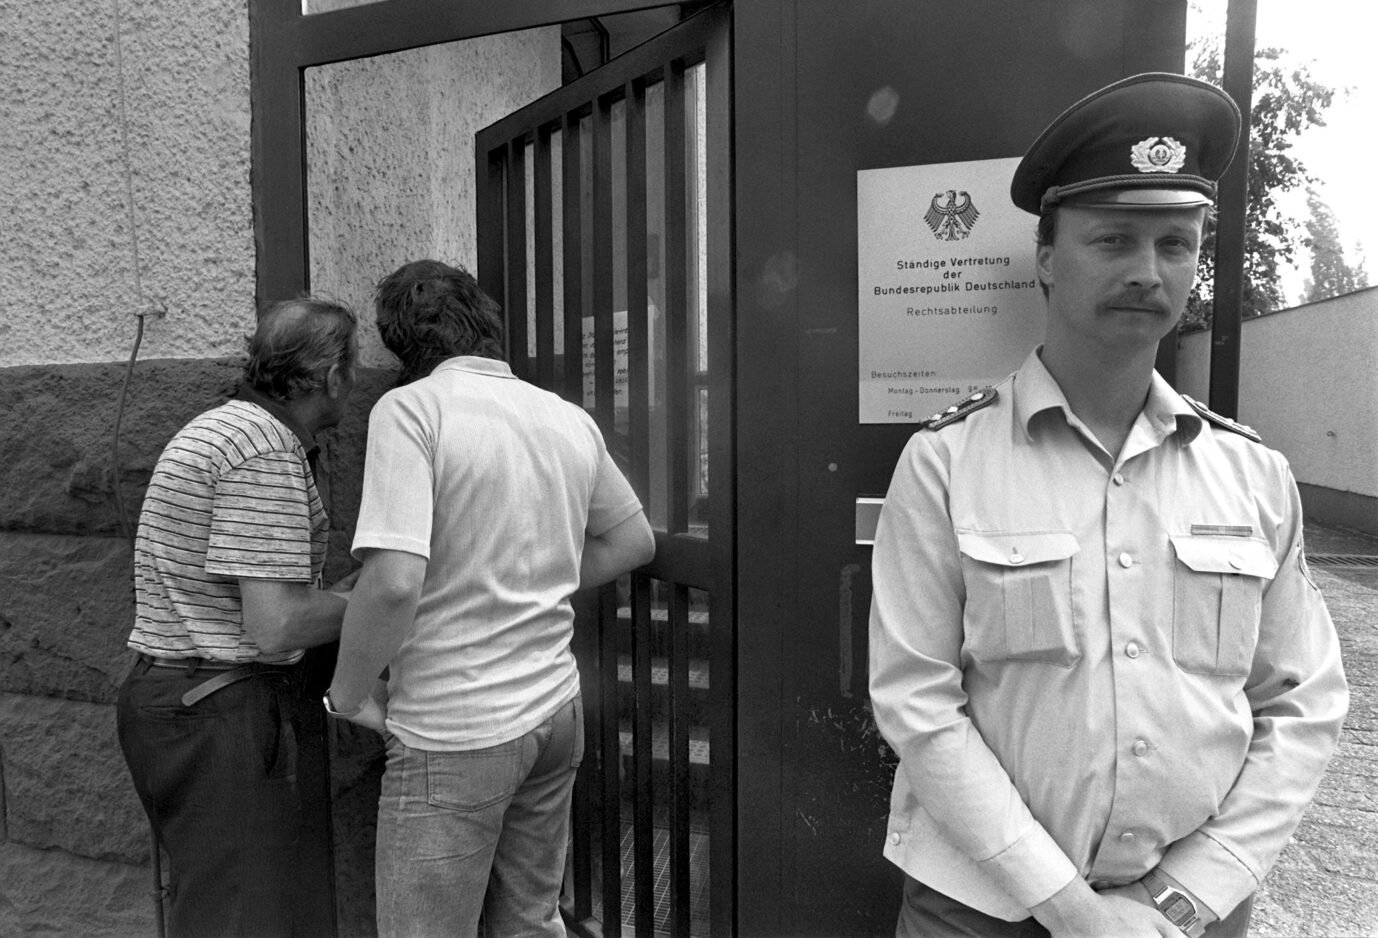 Ein DDR-Polizist bewacht die Ständige Vertretung der Bundesrepublik in Ost-Berlin.